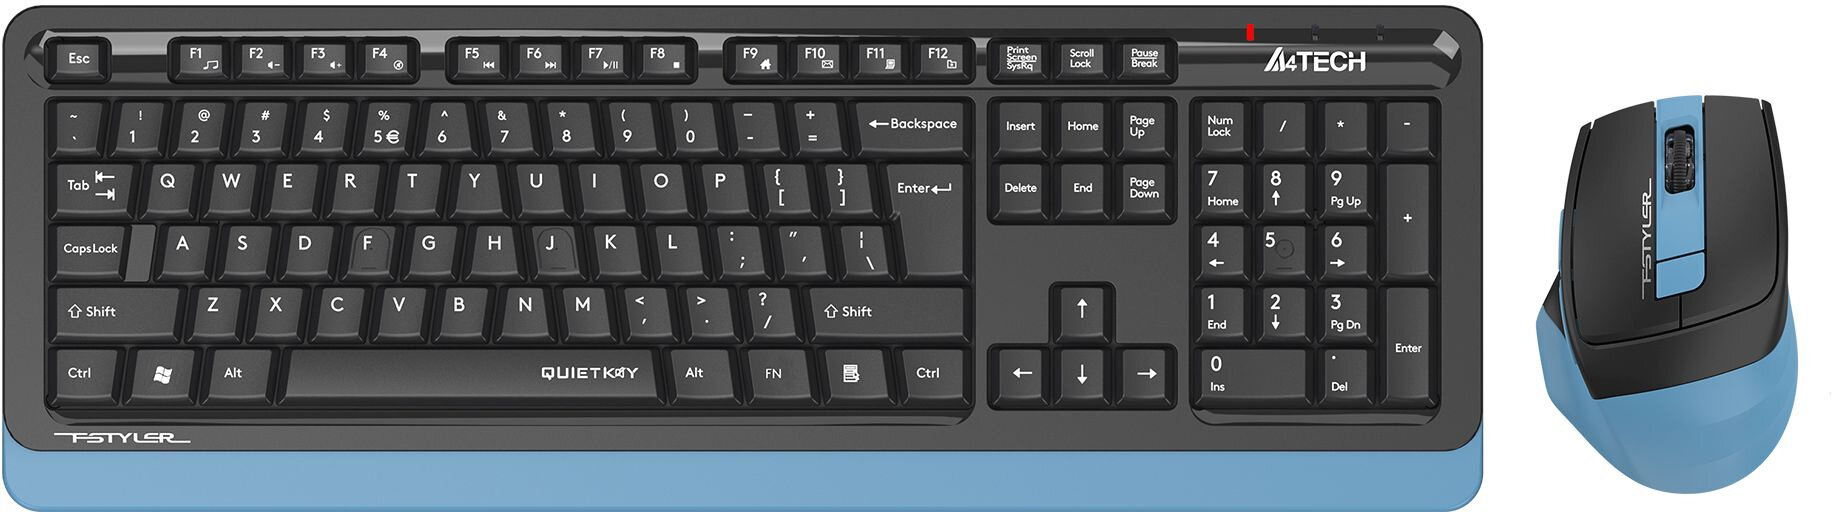 Комплект (клавиатура+мышь) A4TECH Fstyler FGS1035Q, USB, беспроводной, черный [fgs1035q navy blue]